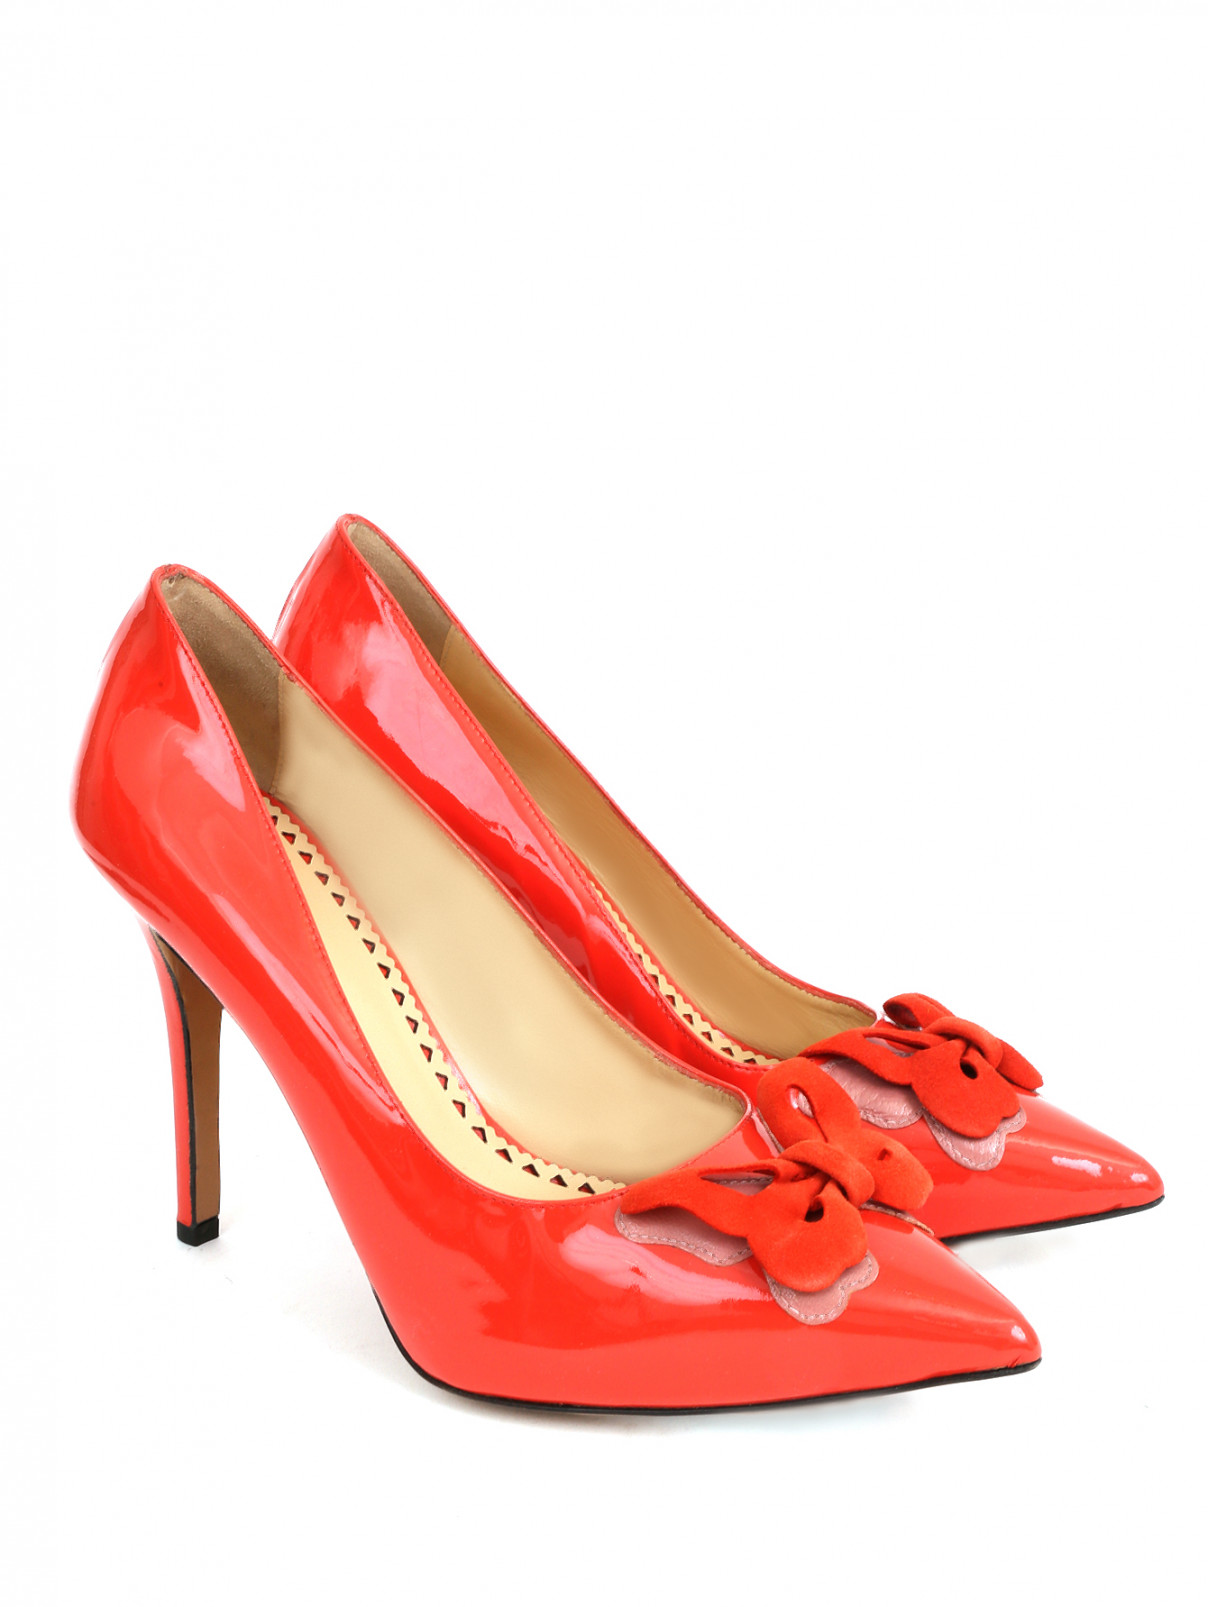 Босоножки из замши на высоком каблуке Moschino Cheap&Chic  –  Общий вид  – Цвет:  Красный